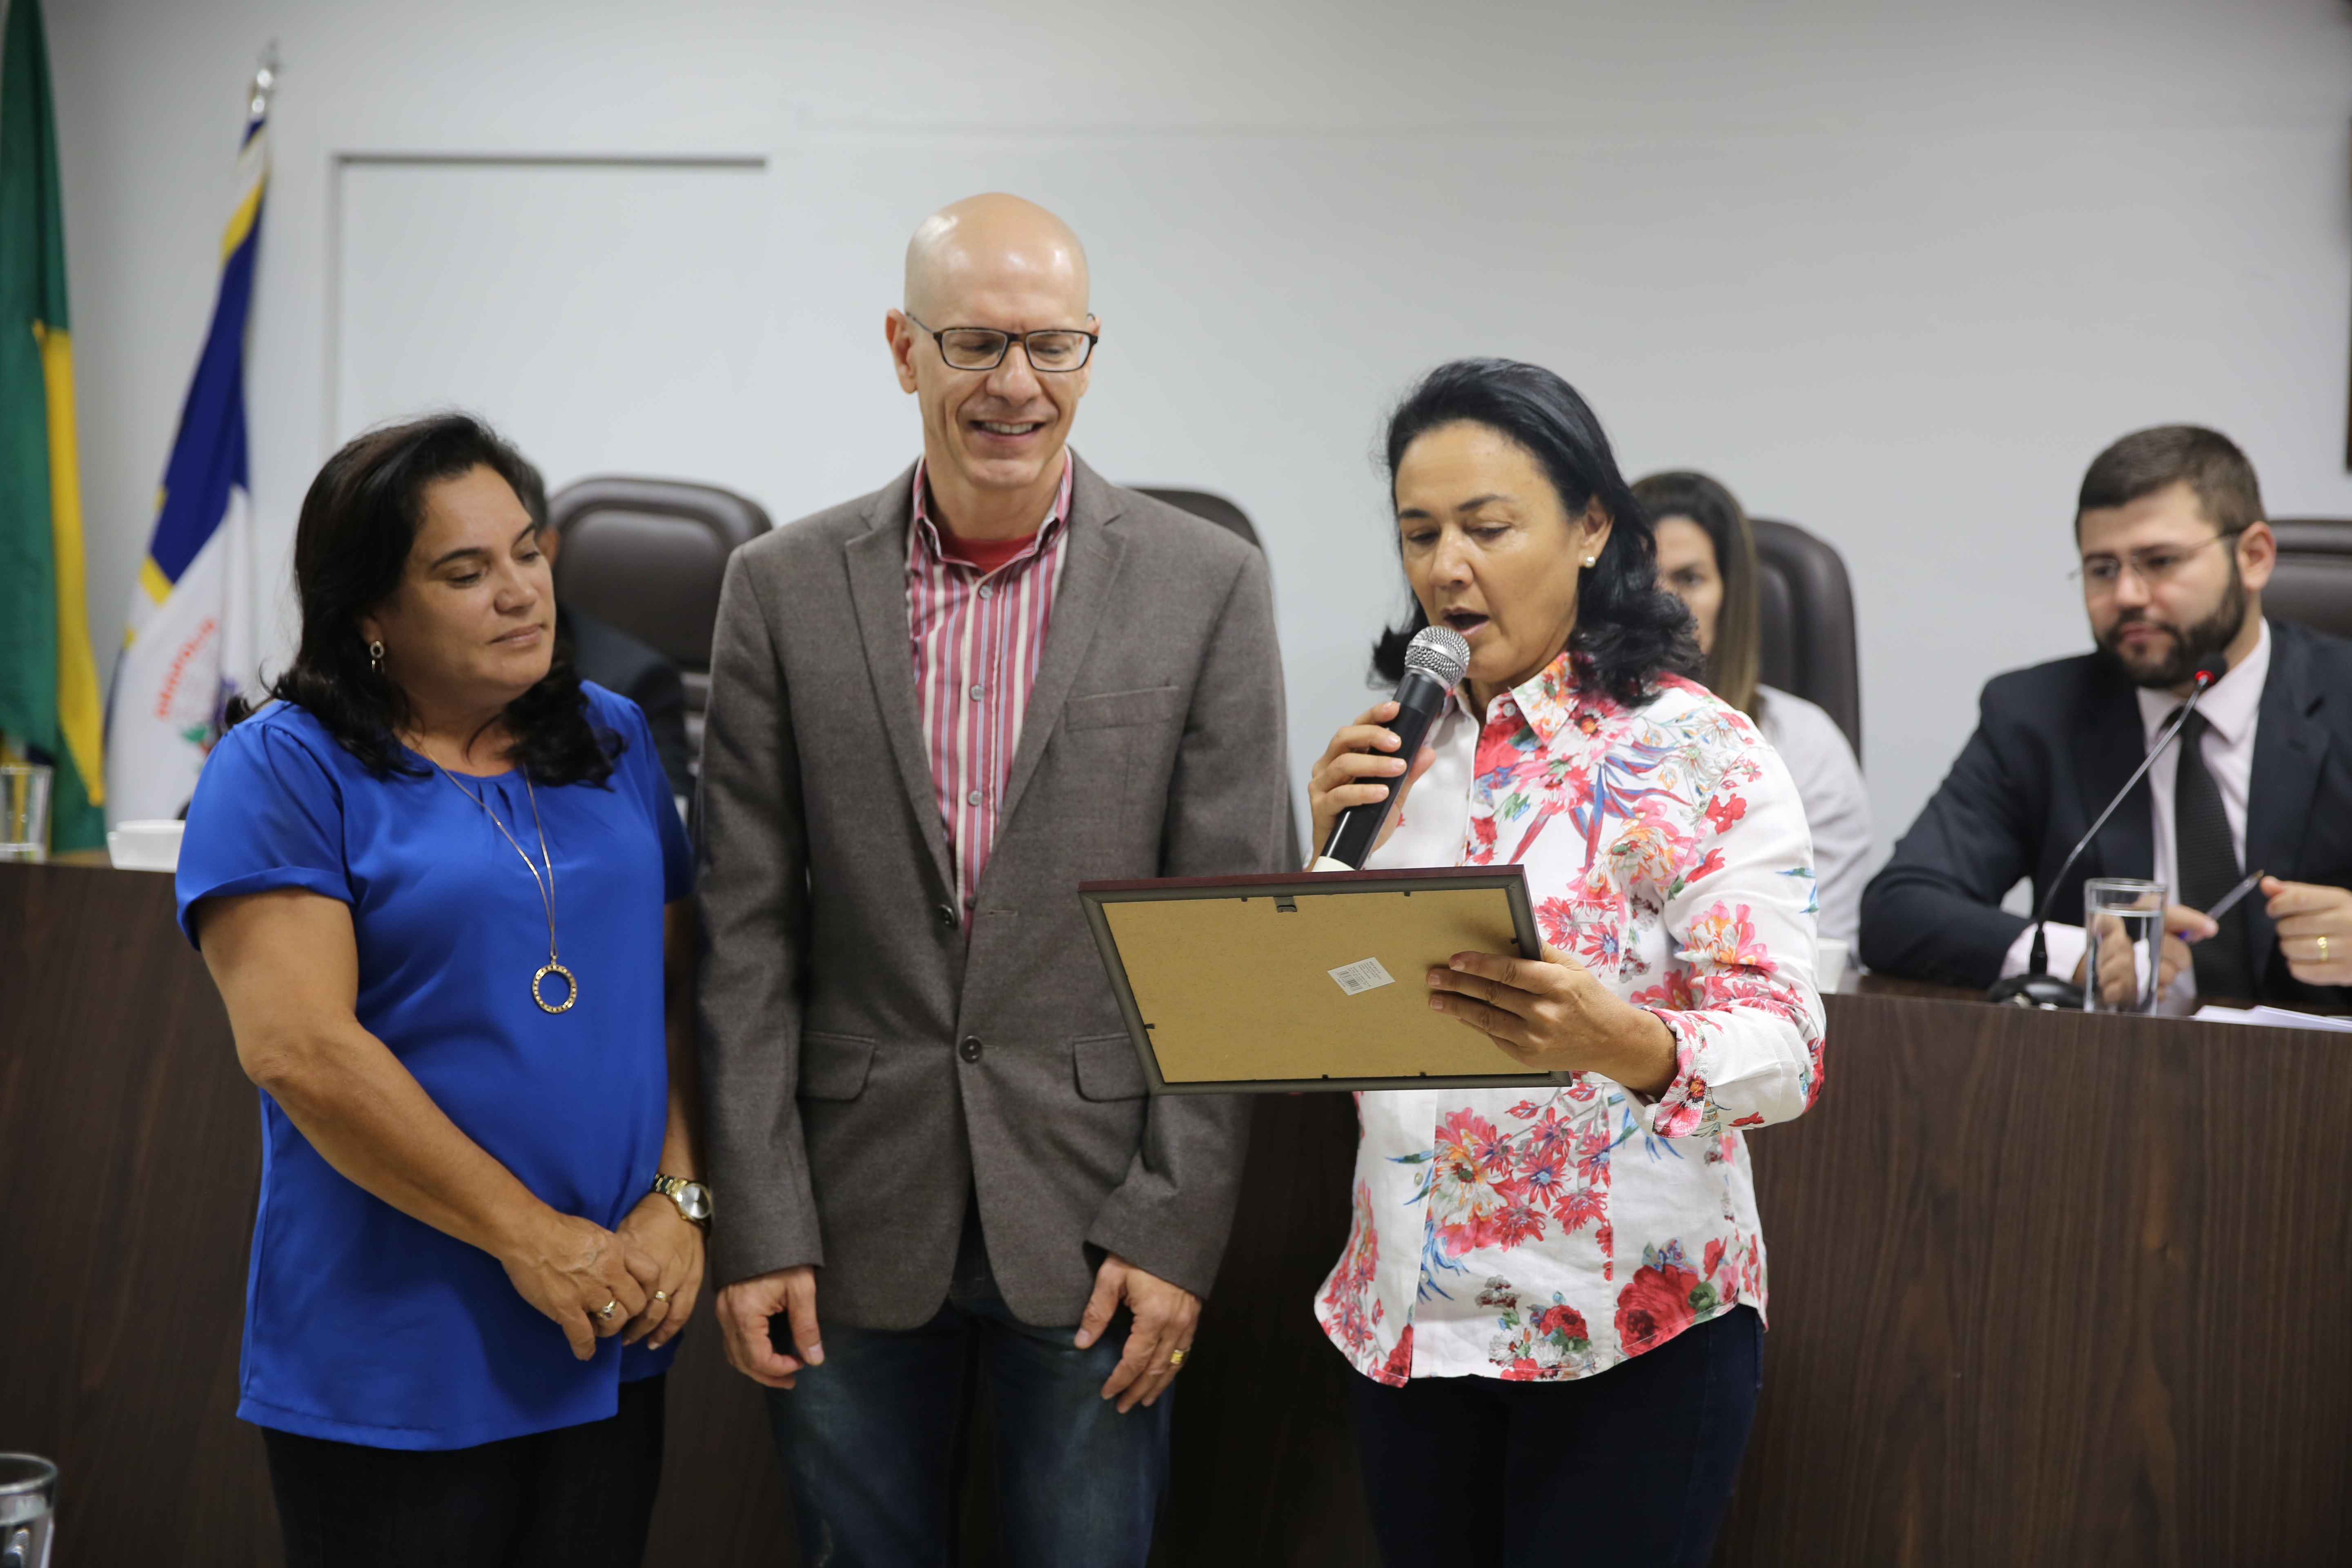 Câmara Municipal presta homenagem à Fama pelo projeto "Desafio Trote Solidário"